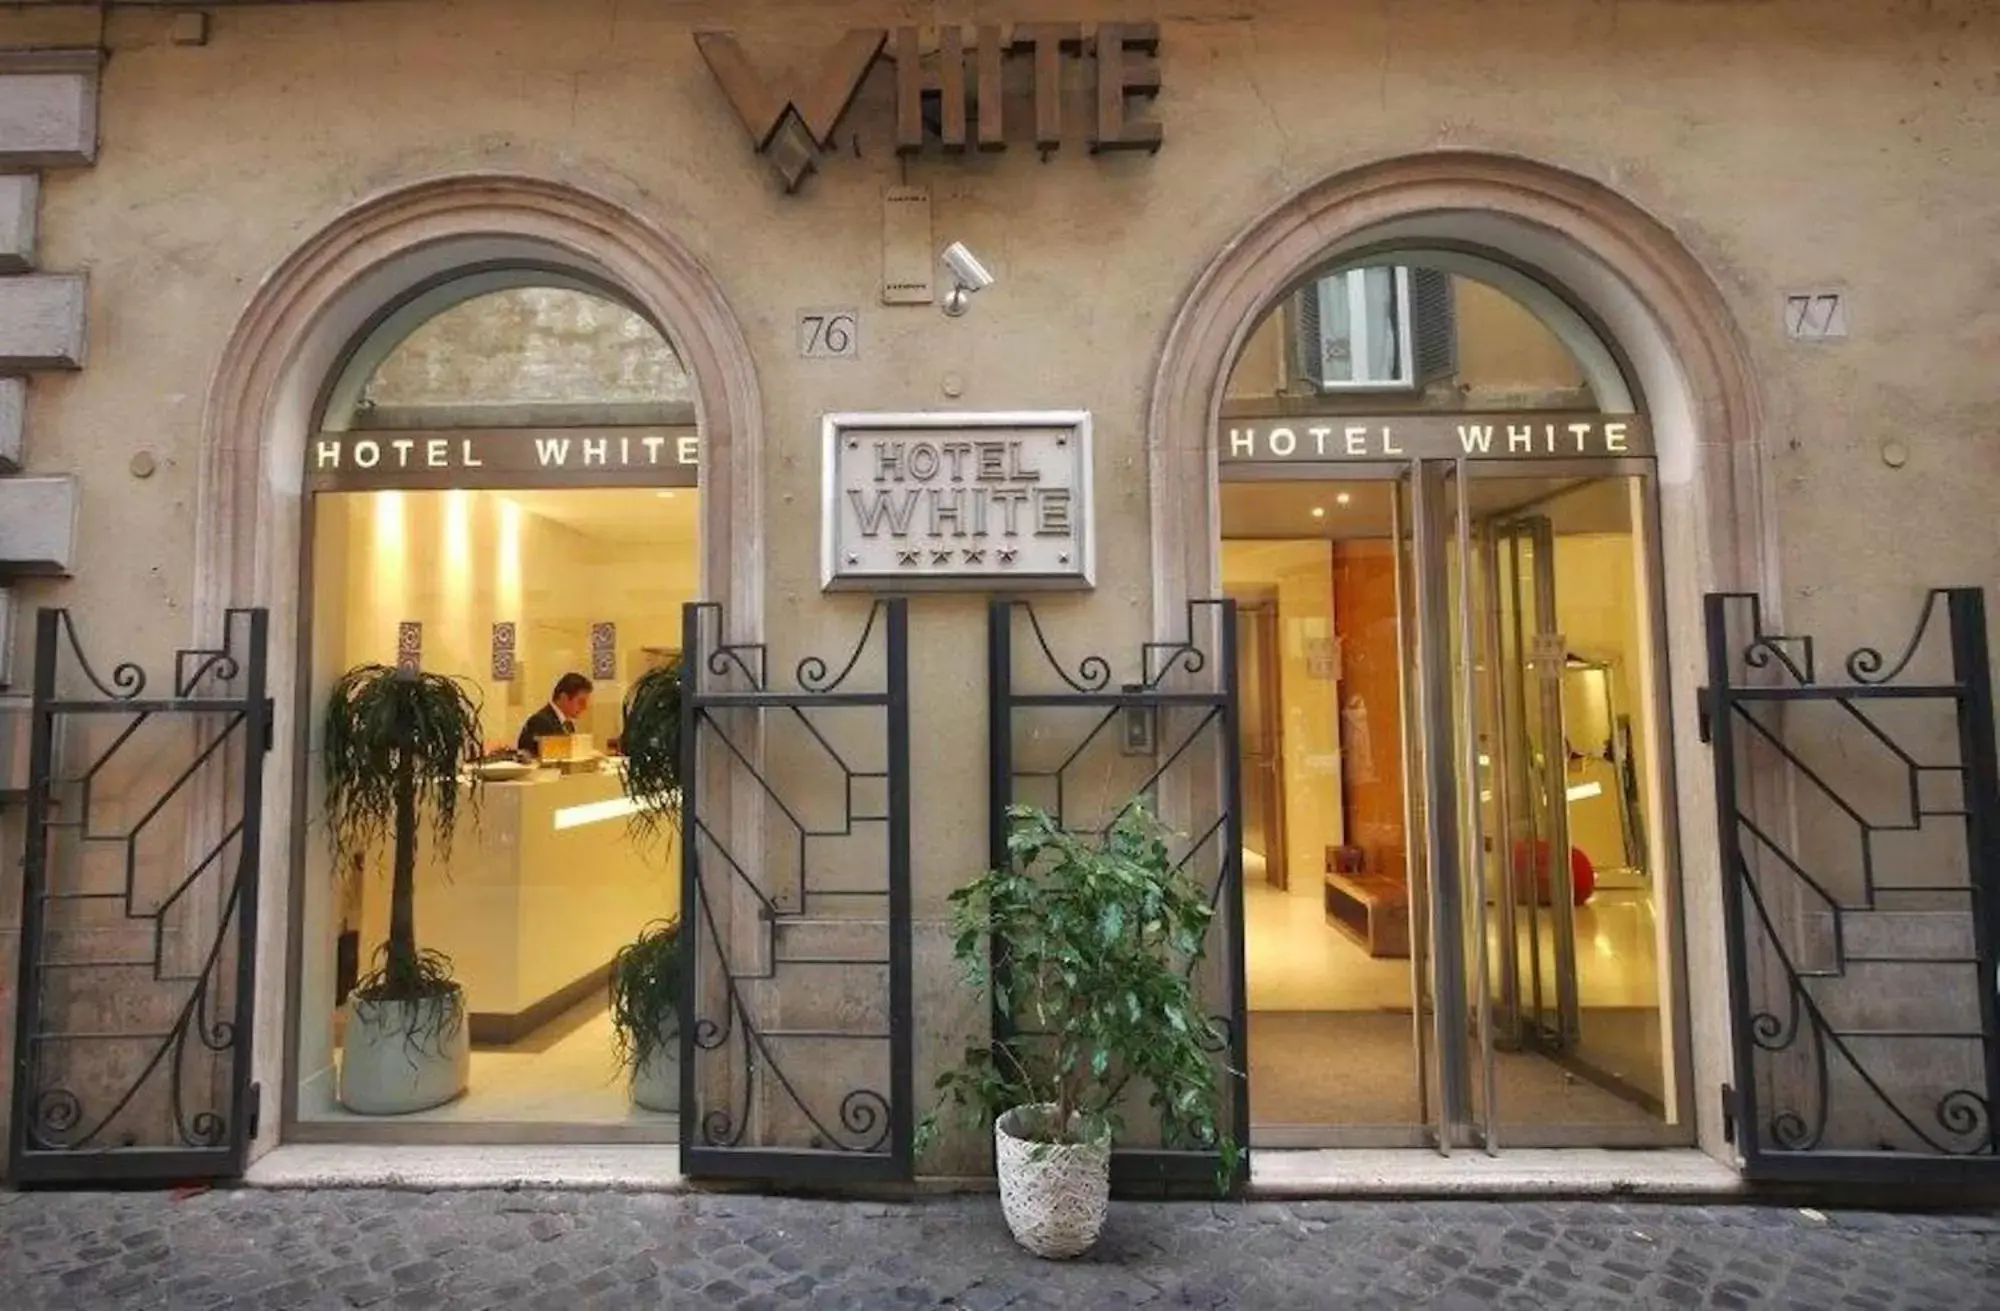 Facade/entrance in Hotel White